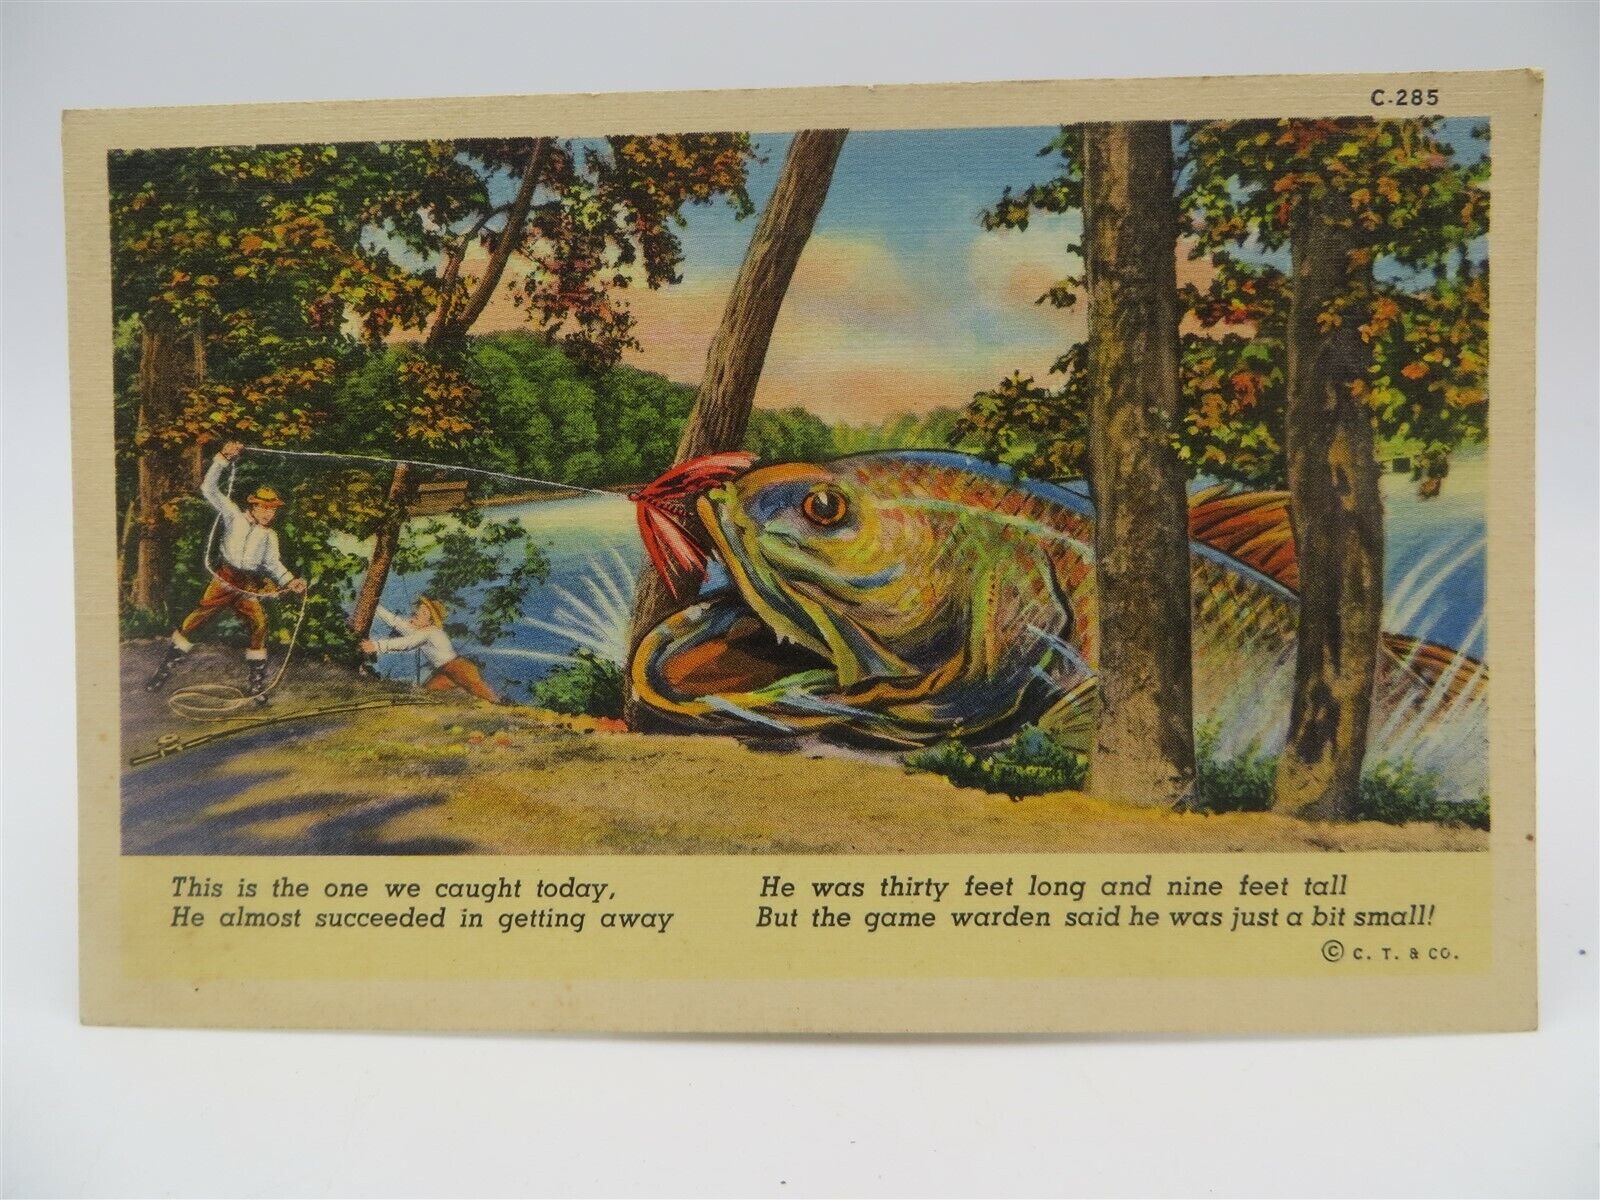 Vintage Postcard - Humor - Giant Fish Caught - Fishing 30 Foot Fish - Unused